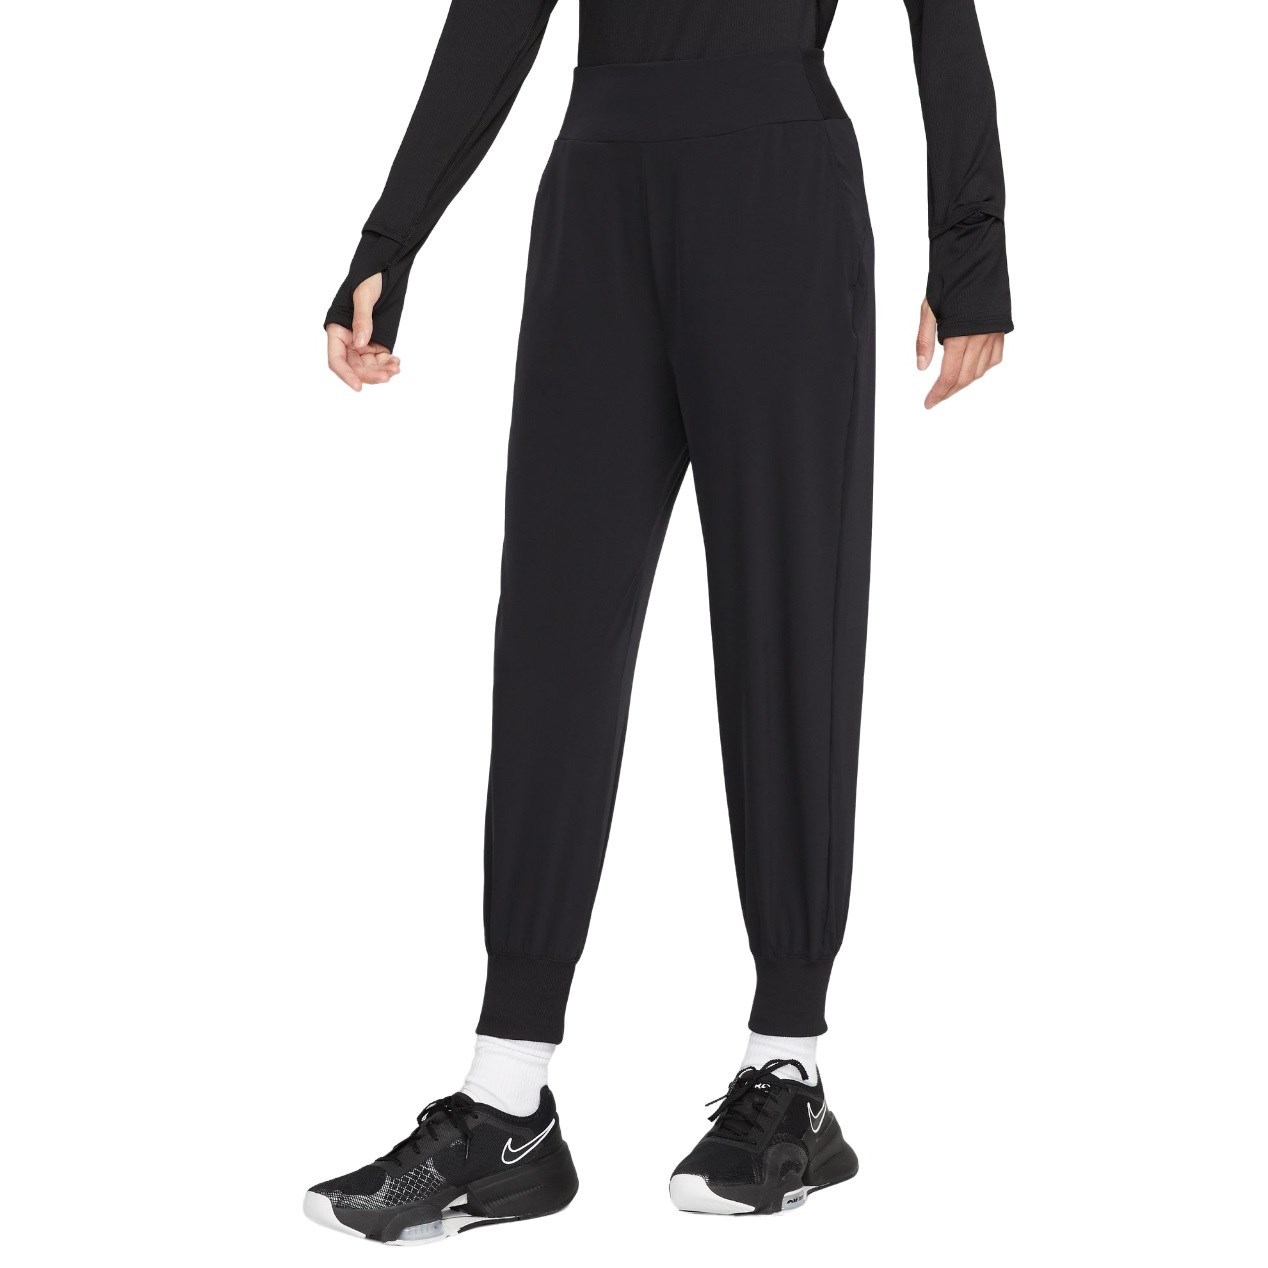 Nike 7/8 running pants DRI-FIT FAST in black